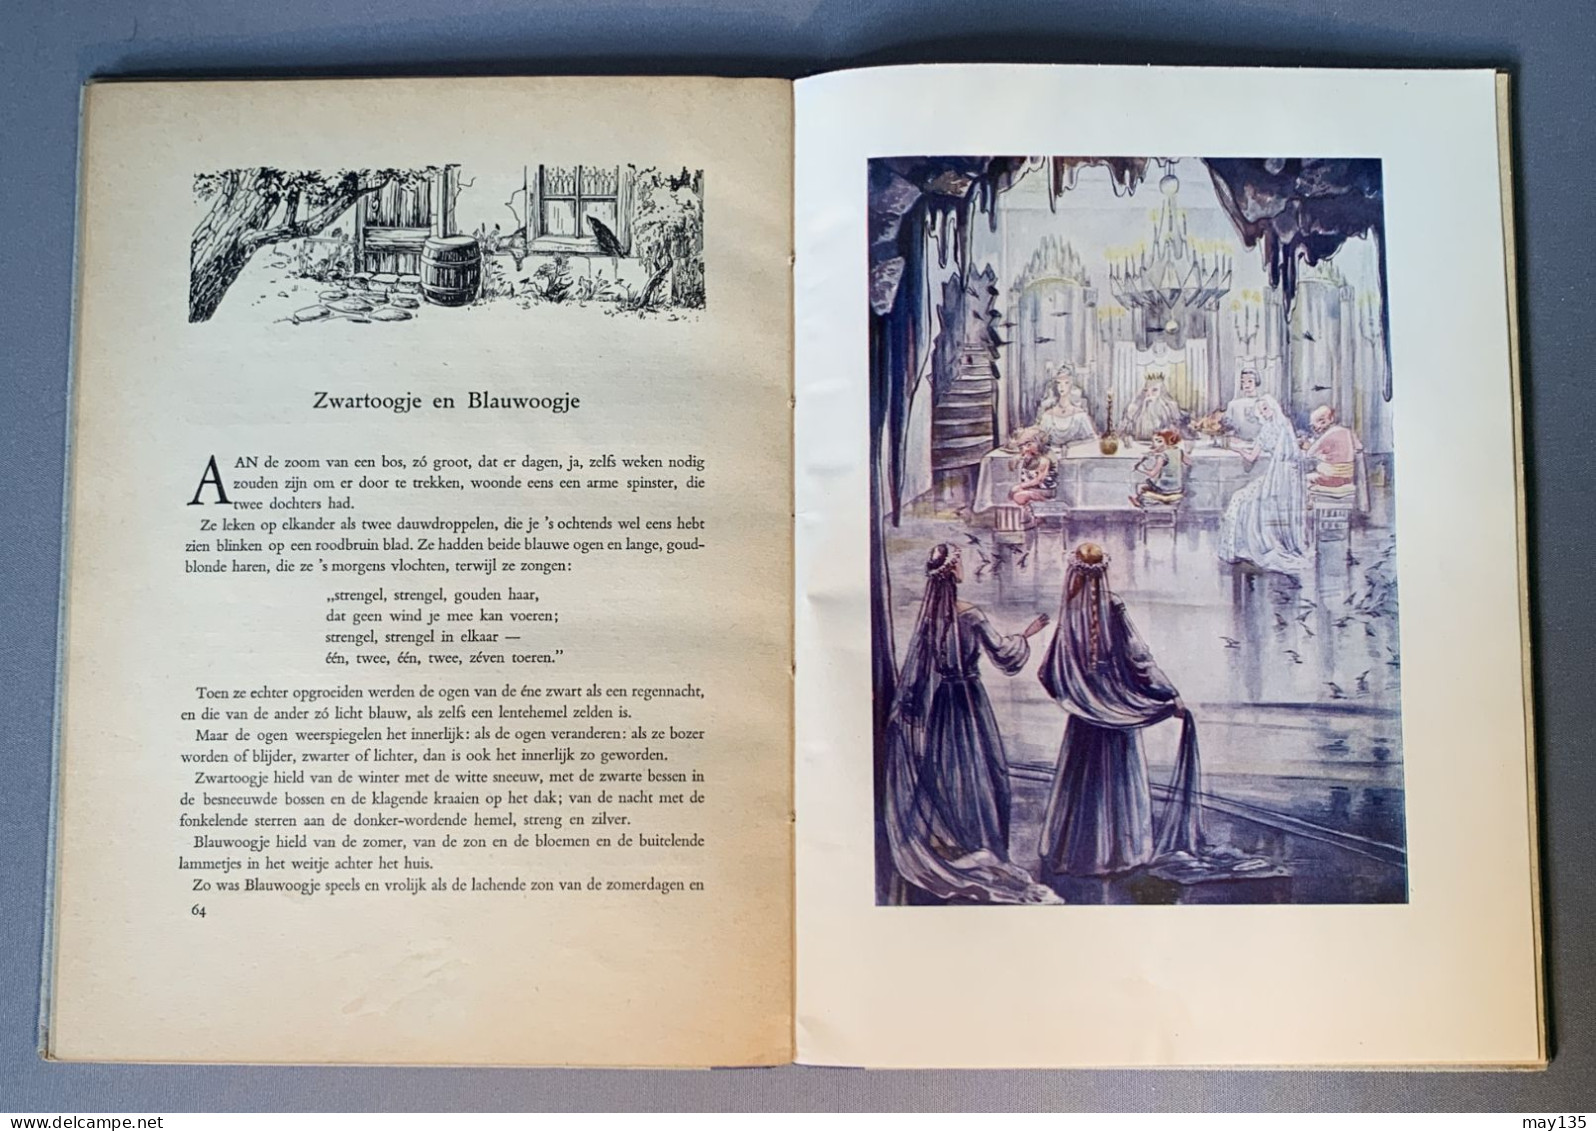 Anno 1946 - Sprookjes Door Frederieke Laagland - 19 Sprookjes Met Illustraties - Antiquariat